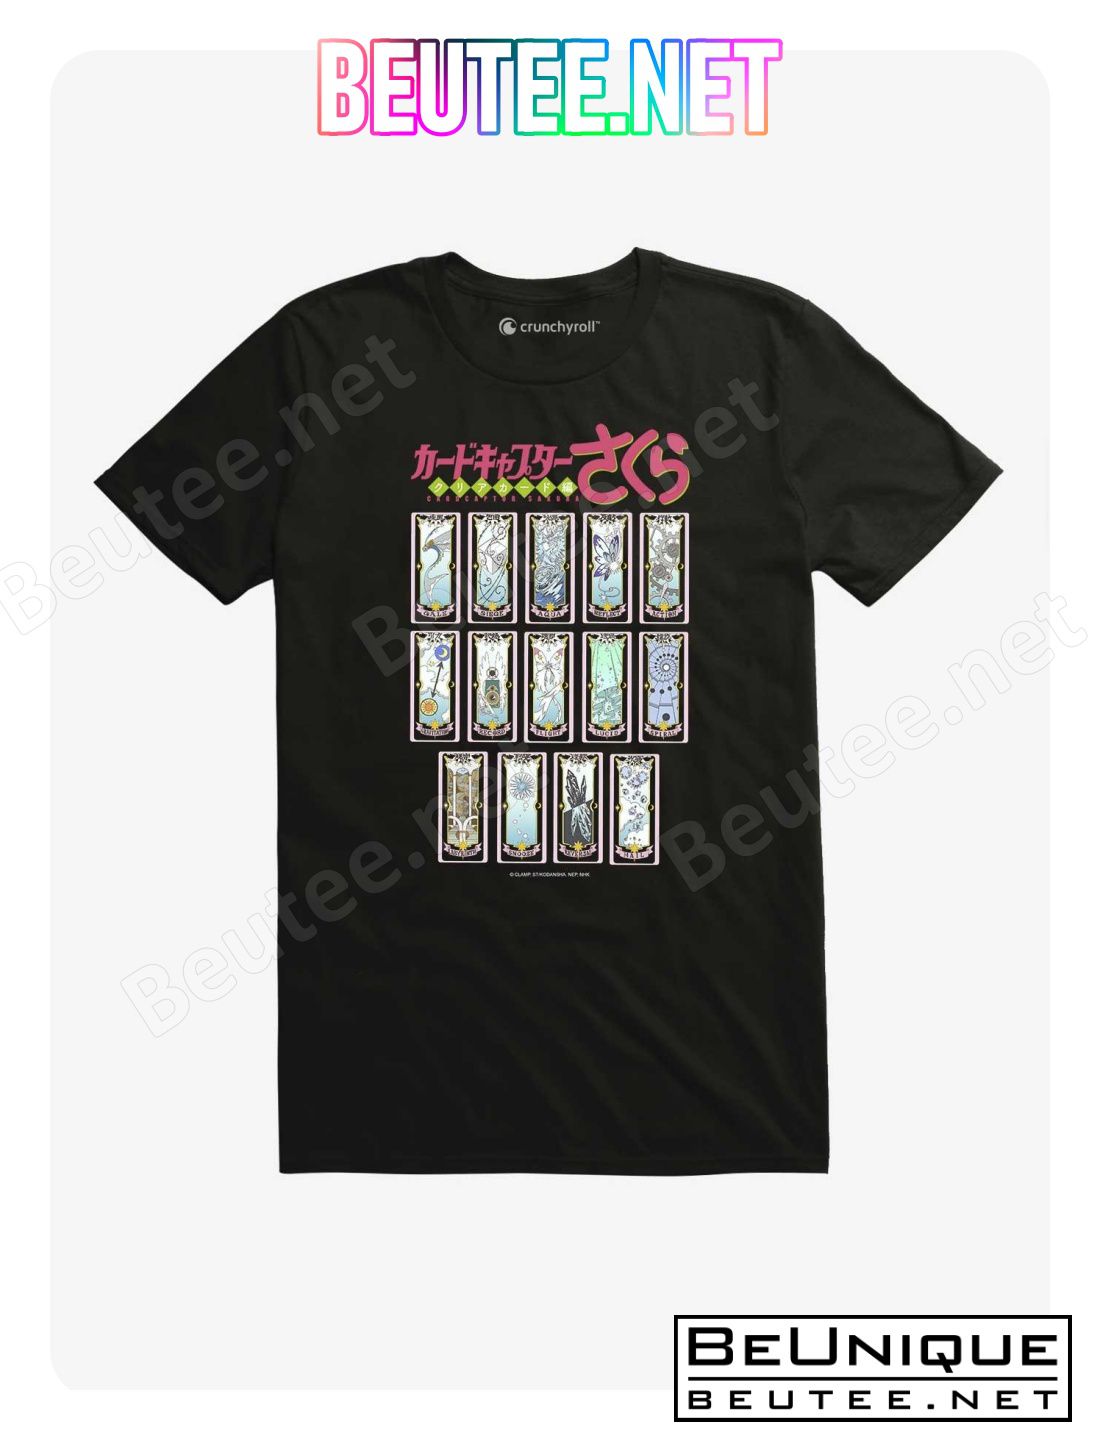 Cardcaptor Sakura Clow Cards T-Shirt